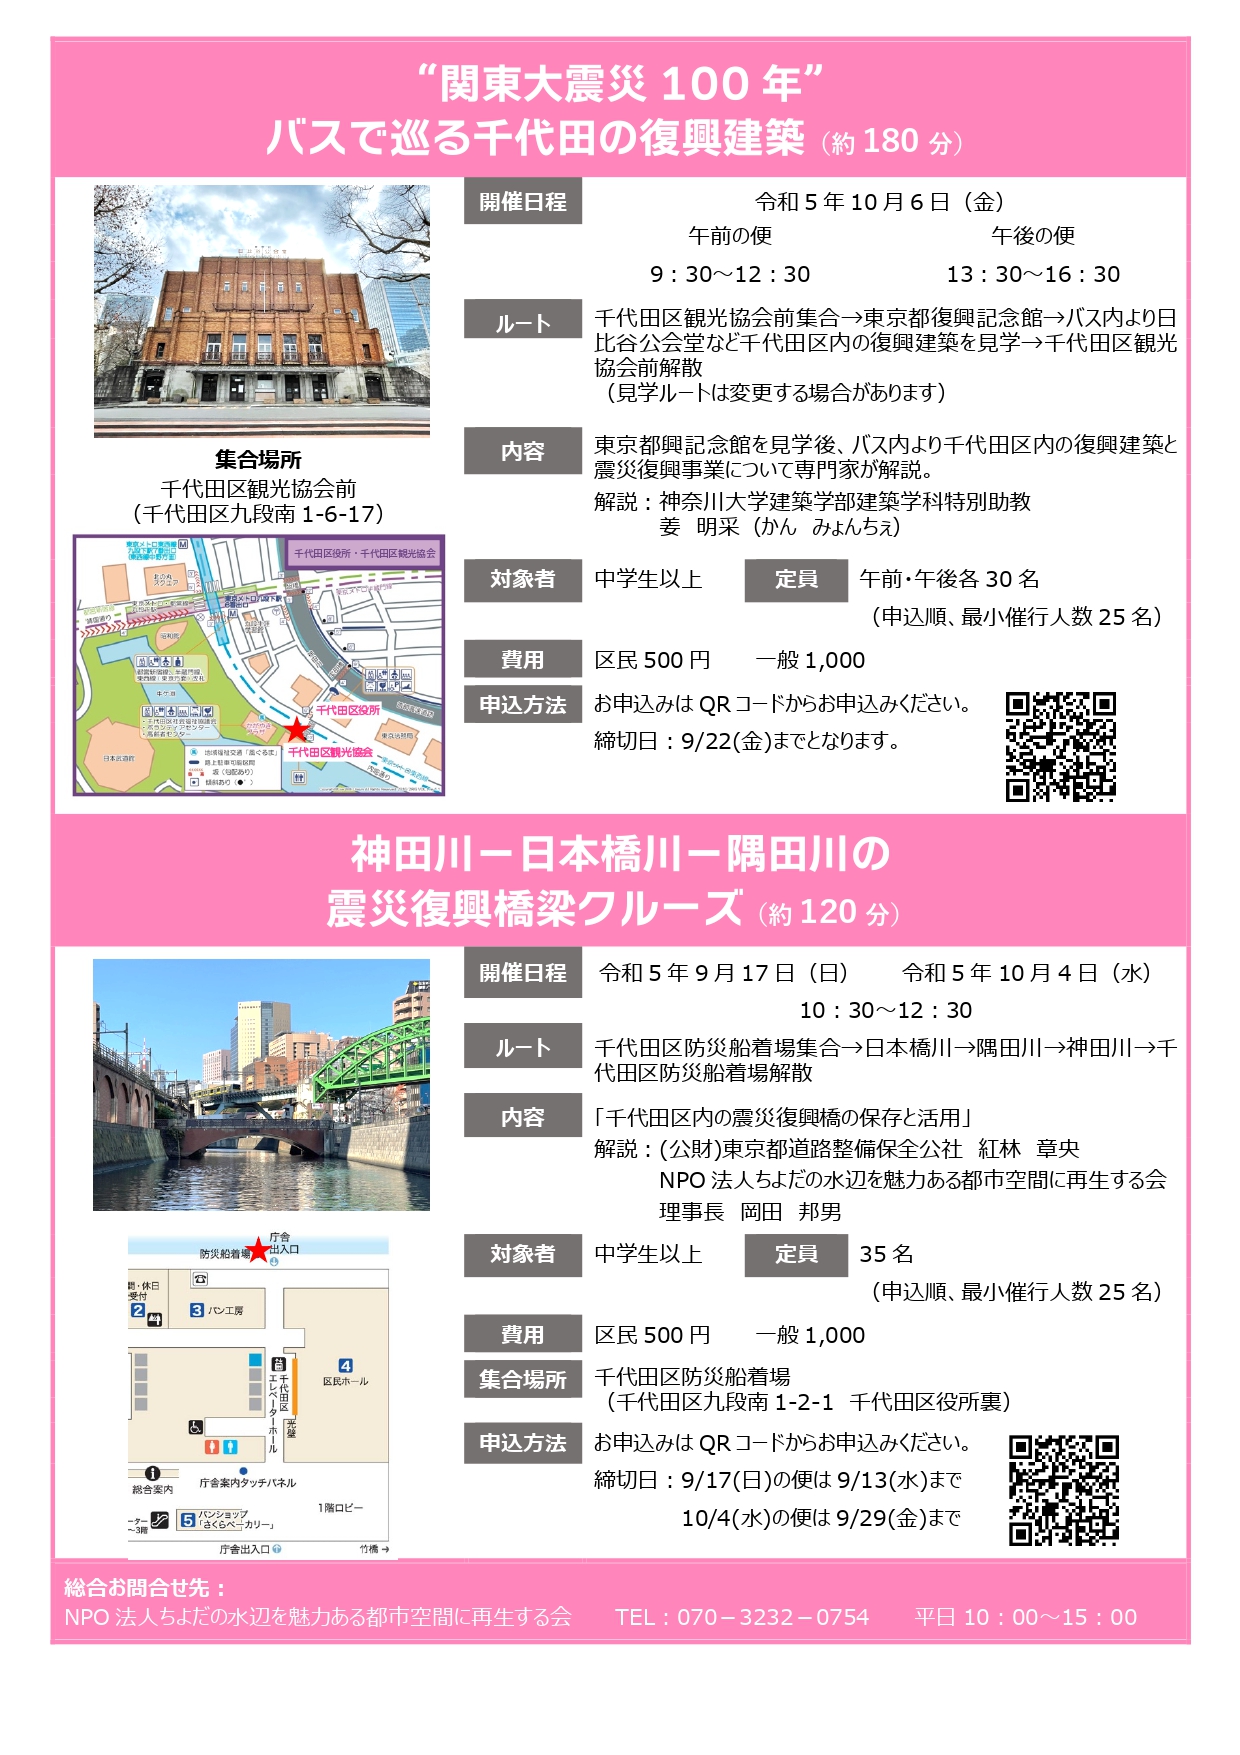 10月5日 ちよだの水辺NPO主催「関東大震災100年シンポジウム」開催 